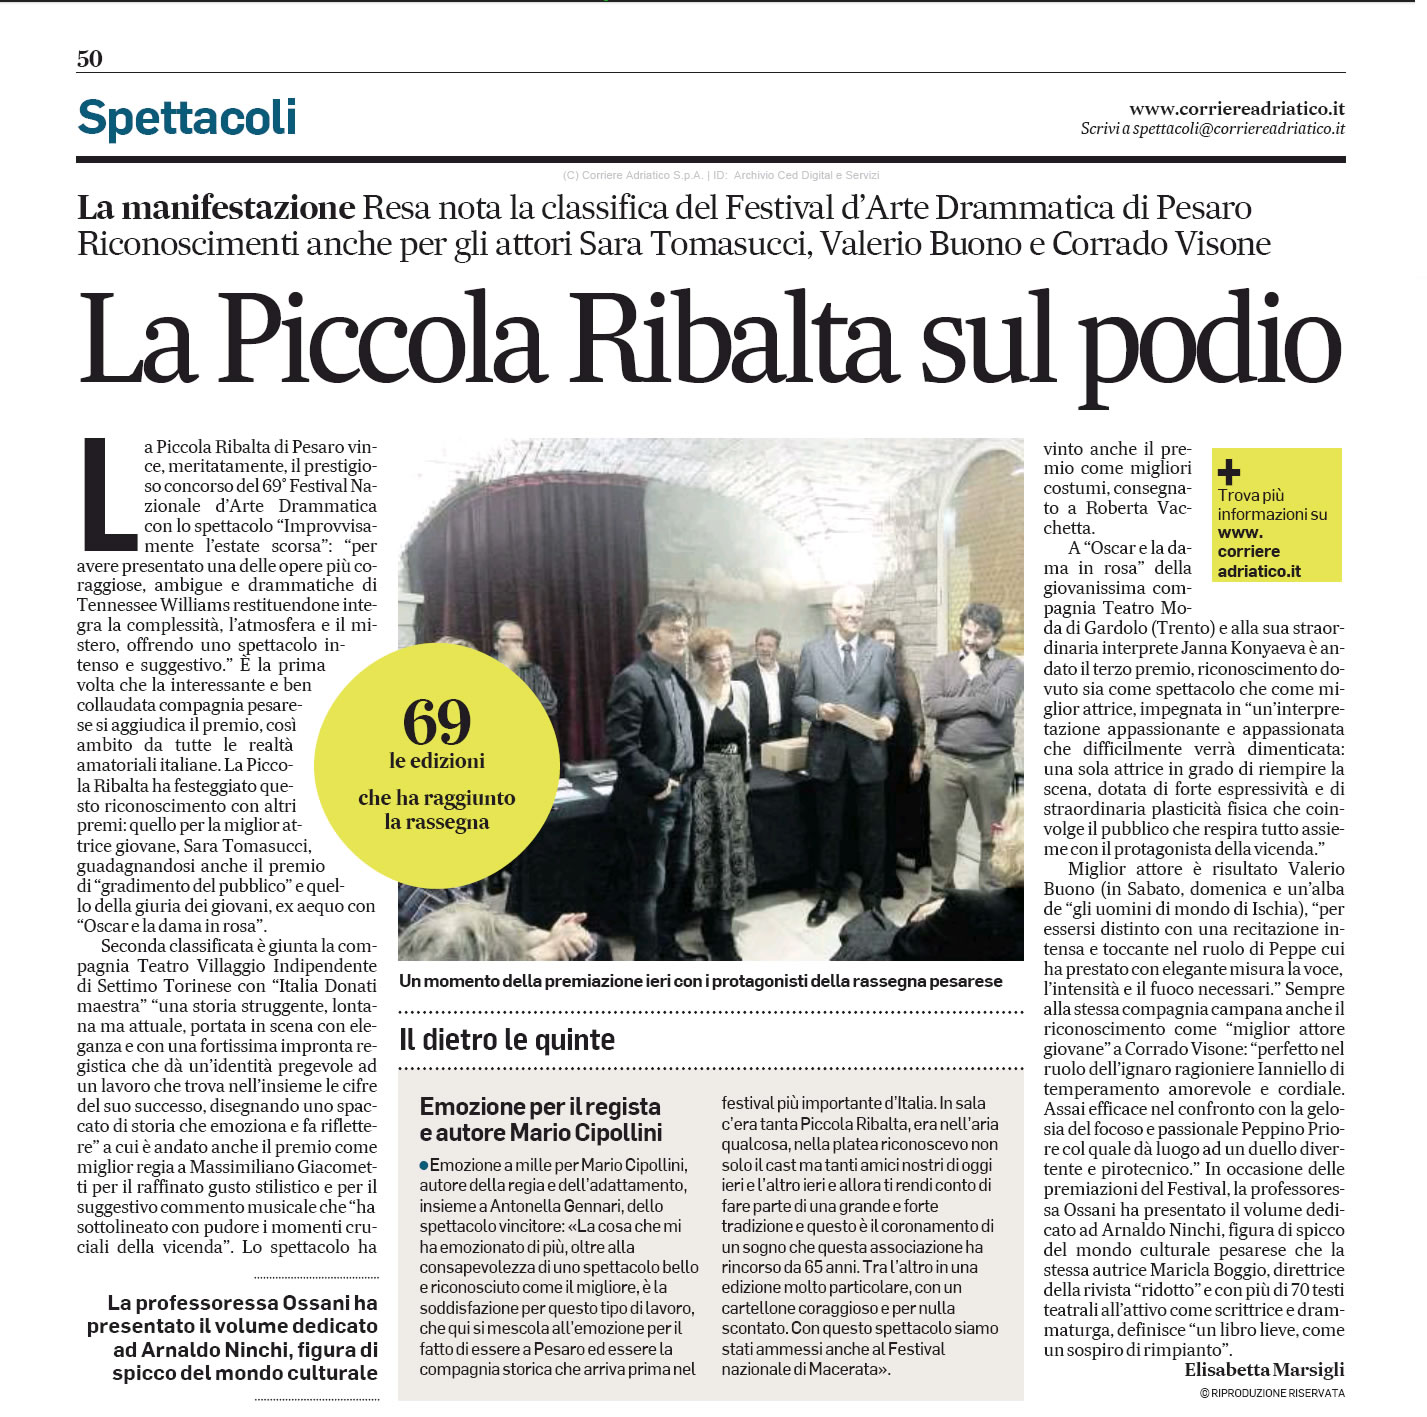 2016 10 31 Corriere Adriatico La Piccola Ribalta sul podio